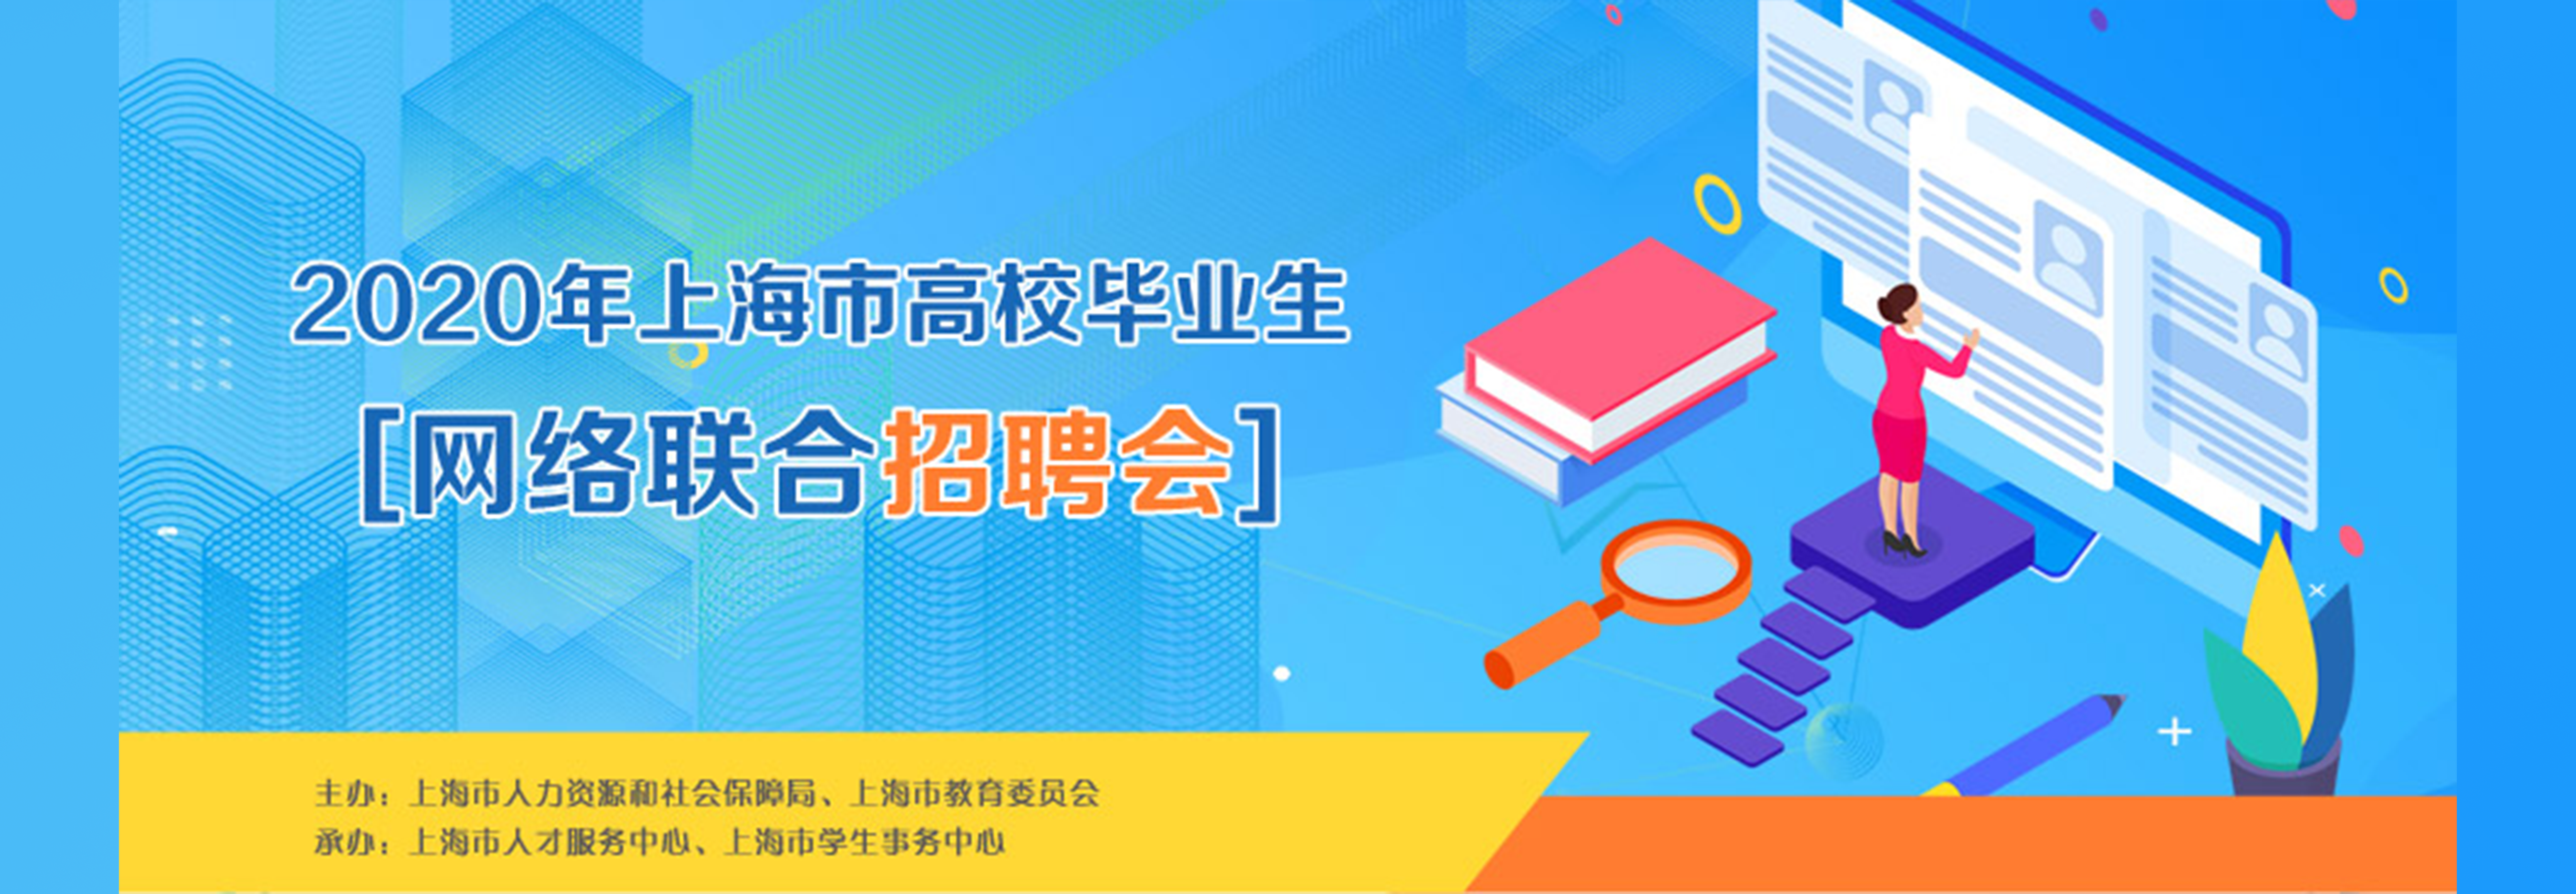 2020年上海市高校毕业生网络联合招聘会.png